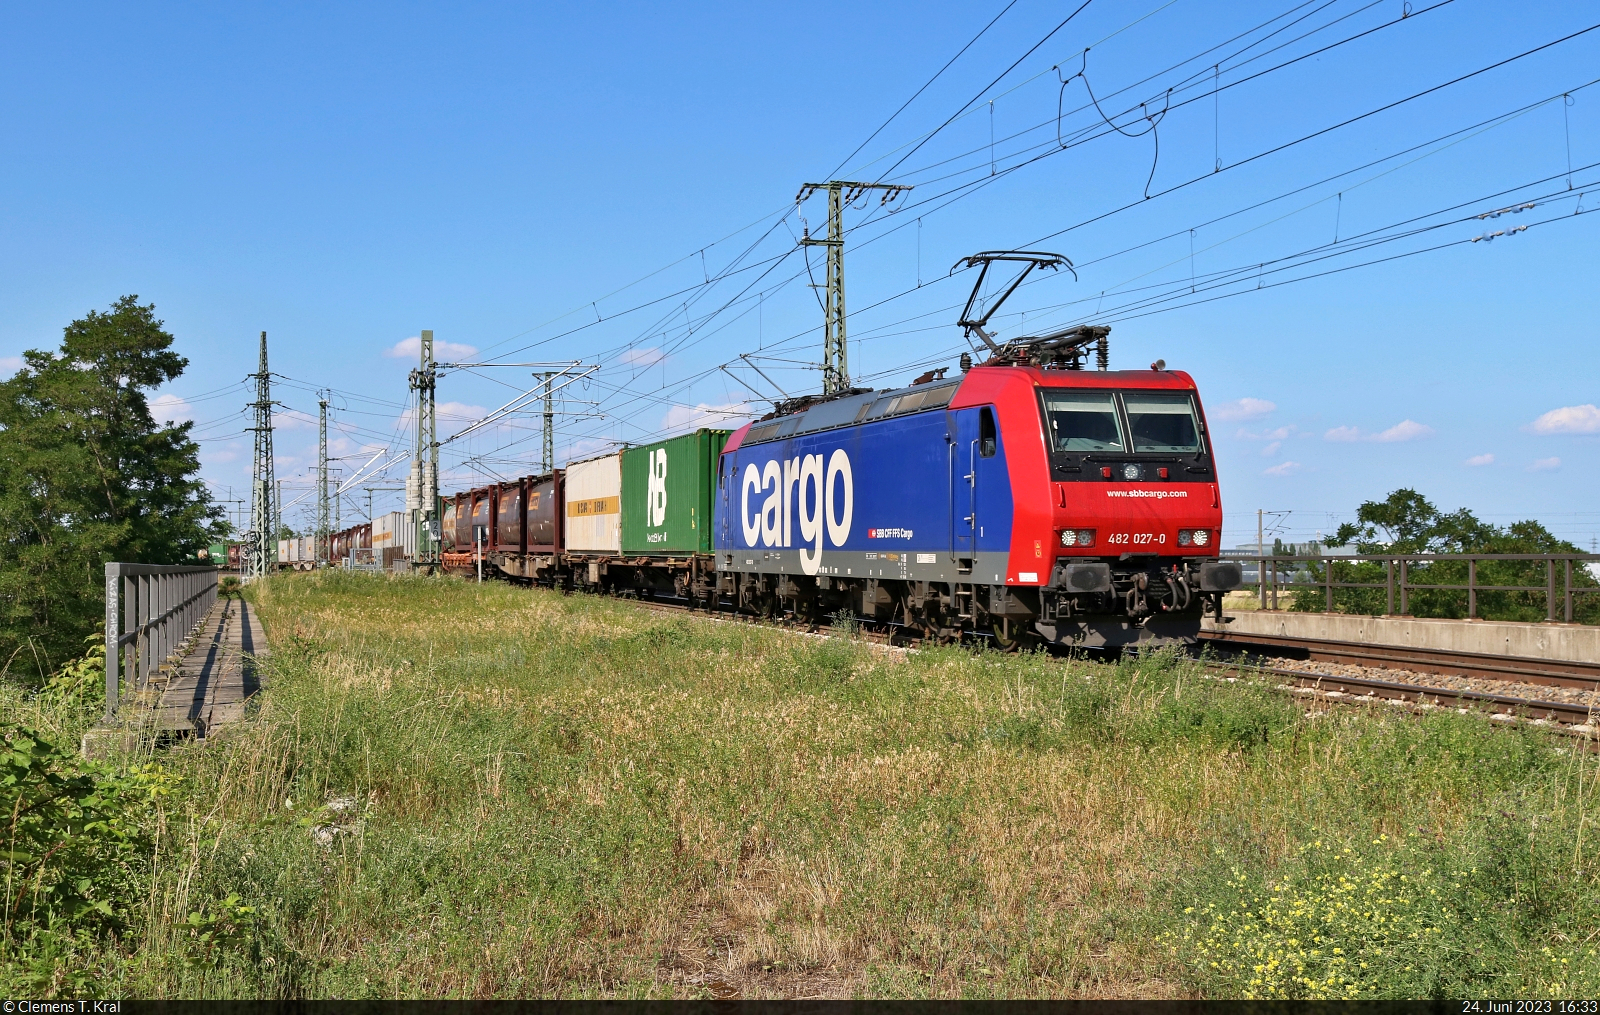 Containerzug (Bertschi AG) mit Re 482 027-0 überquert in Halle (Saale) die Leipziger Chaussee (B 6) Richtung Abzweig Thüringer Bahn.

🧰 SBB Cargo AG, vermietet an die SBB Cargo International AG
🕓 24.6.2023 | 16:33 Uhr